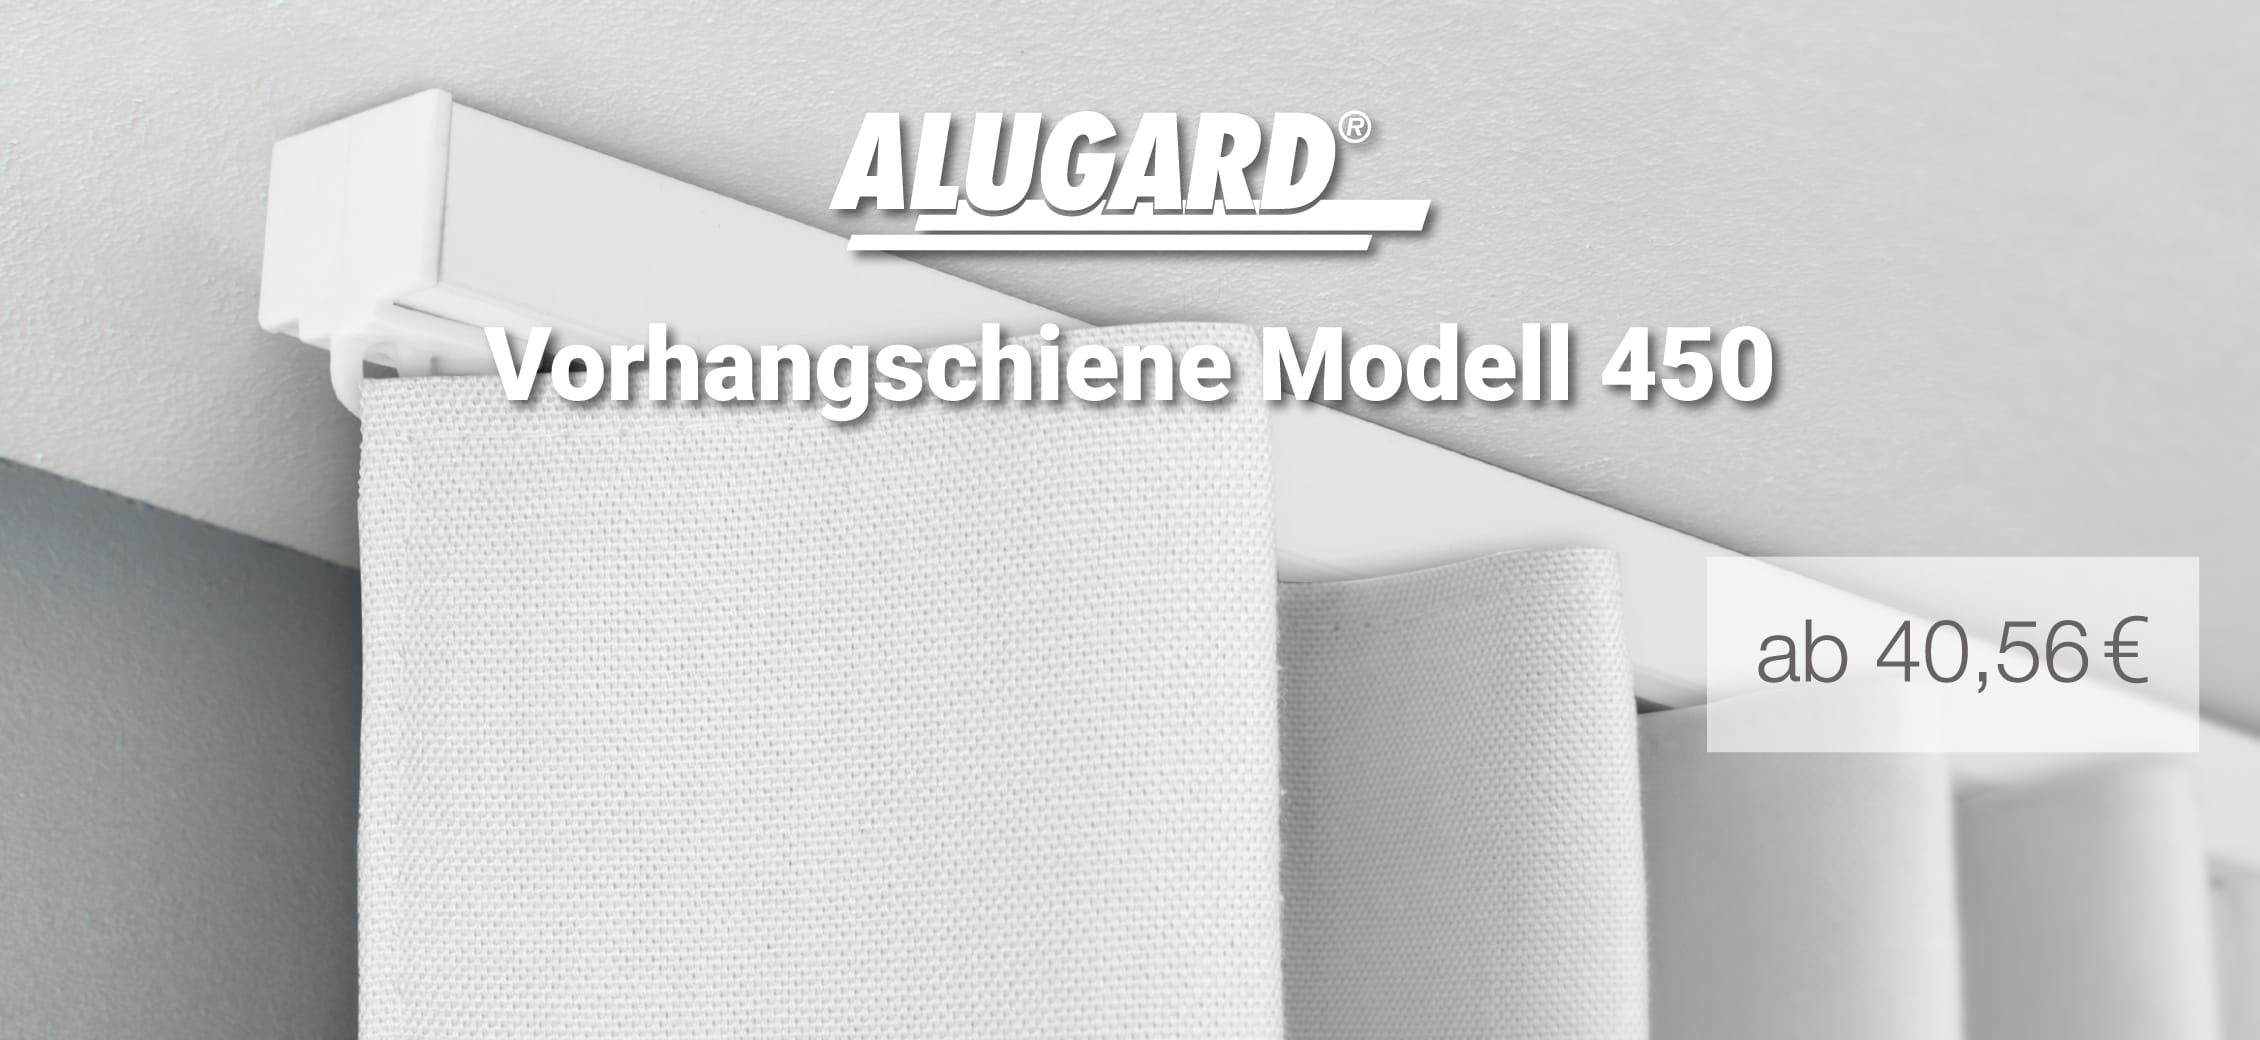 <p>Gardinen / Vorhangschiene zur Schnellmontage Modell 450 inklusive Enddeckel</p>
